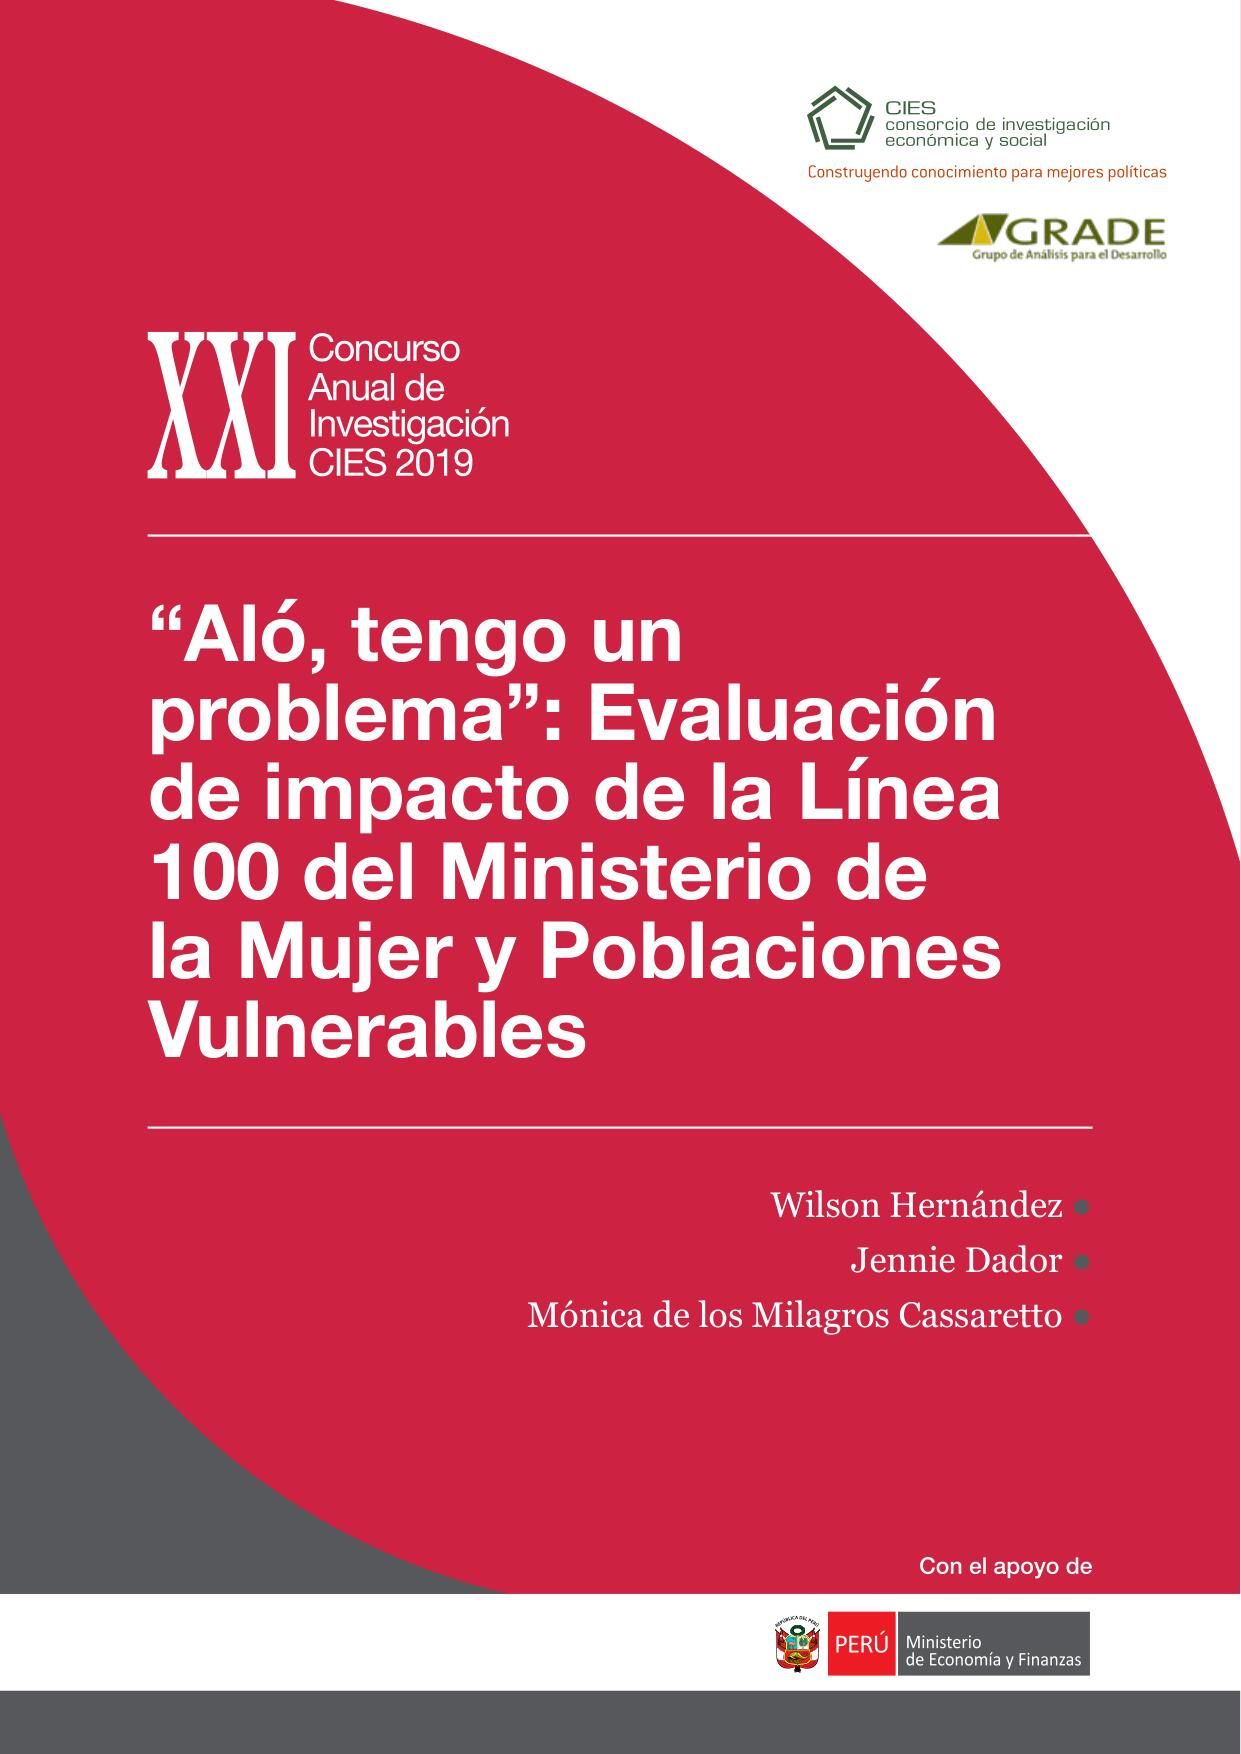 “Aló, tengo un problema”: evaluación de impacto de la Línea 100 del Ministerio de la Mujer y Poblaciones Vulnerables